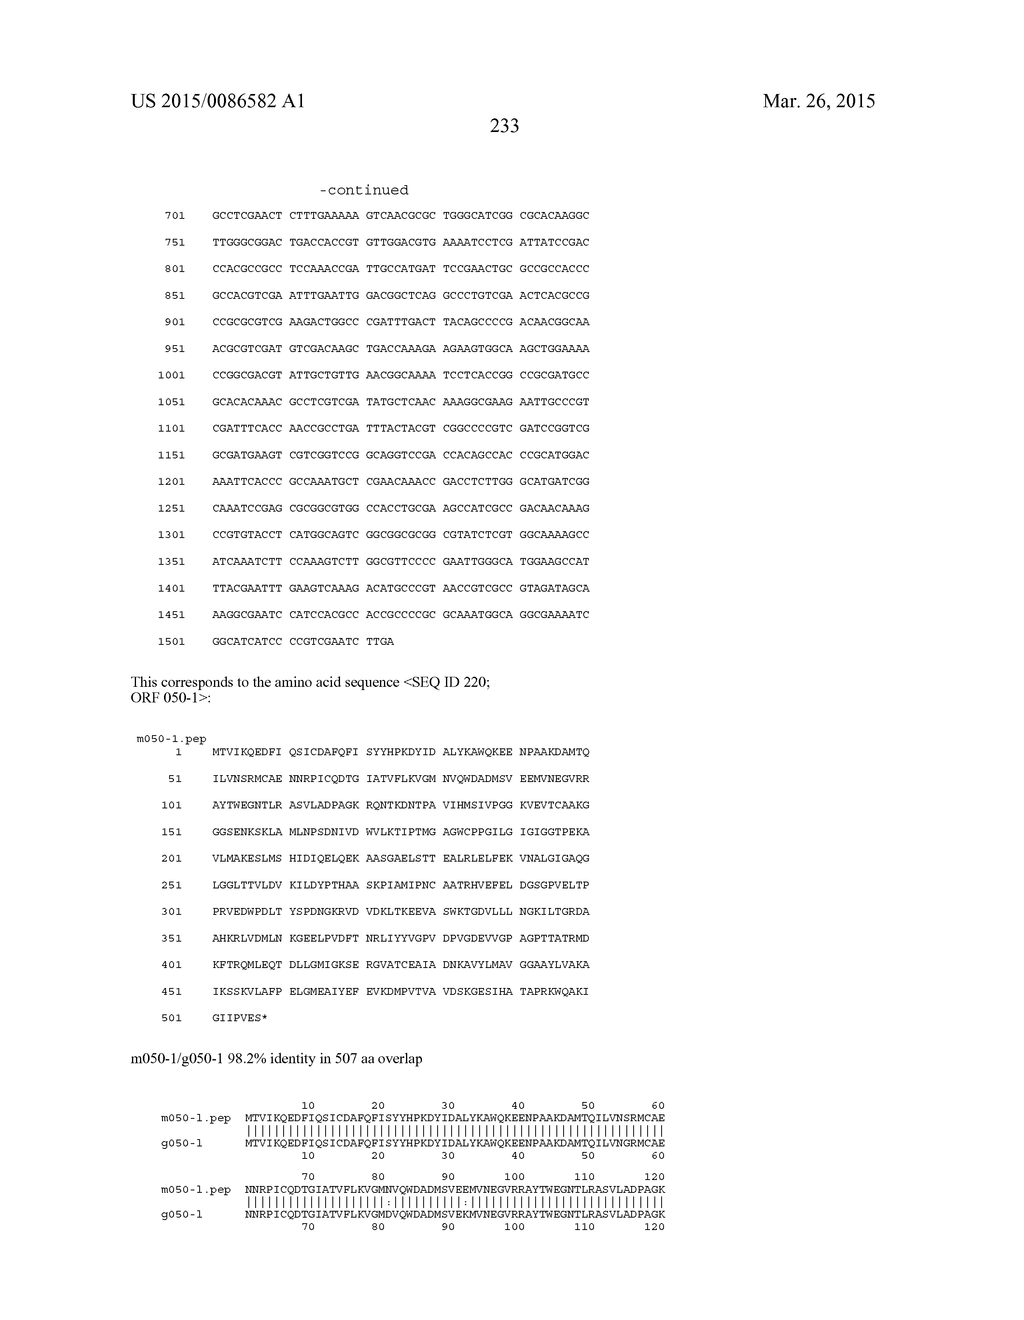 NEISSERIA MENINGITIDIS ANTIGENS AND COMPOSITIONS - diagram, schematic, and image 265